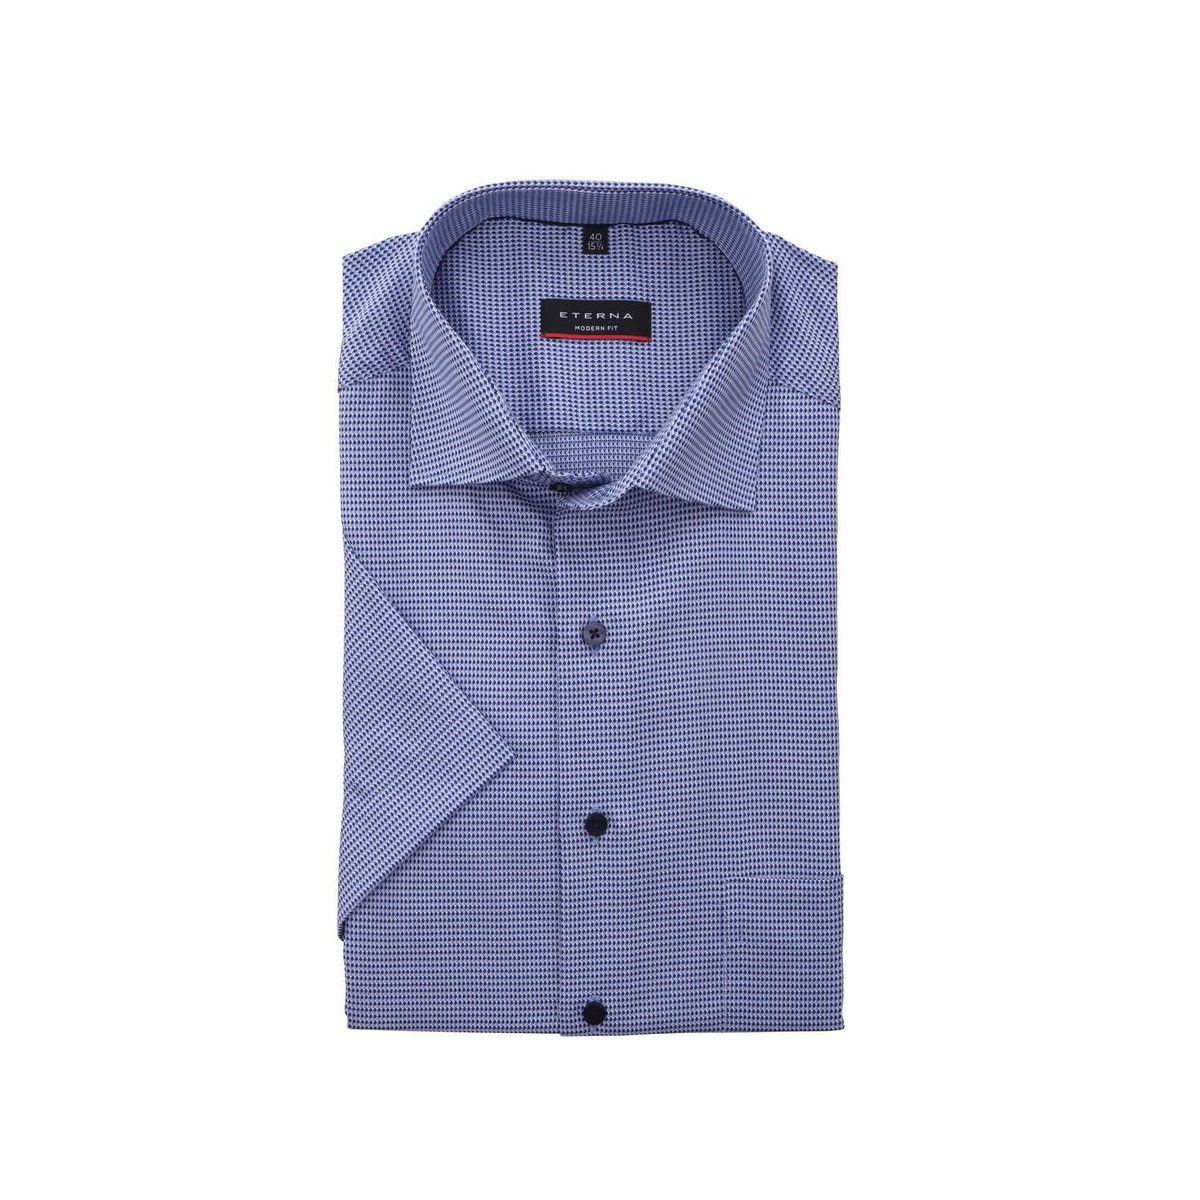 Eterna blau keine Angabe) (keine Angabe, 1-St., Unterhemd